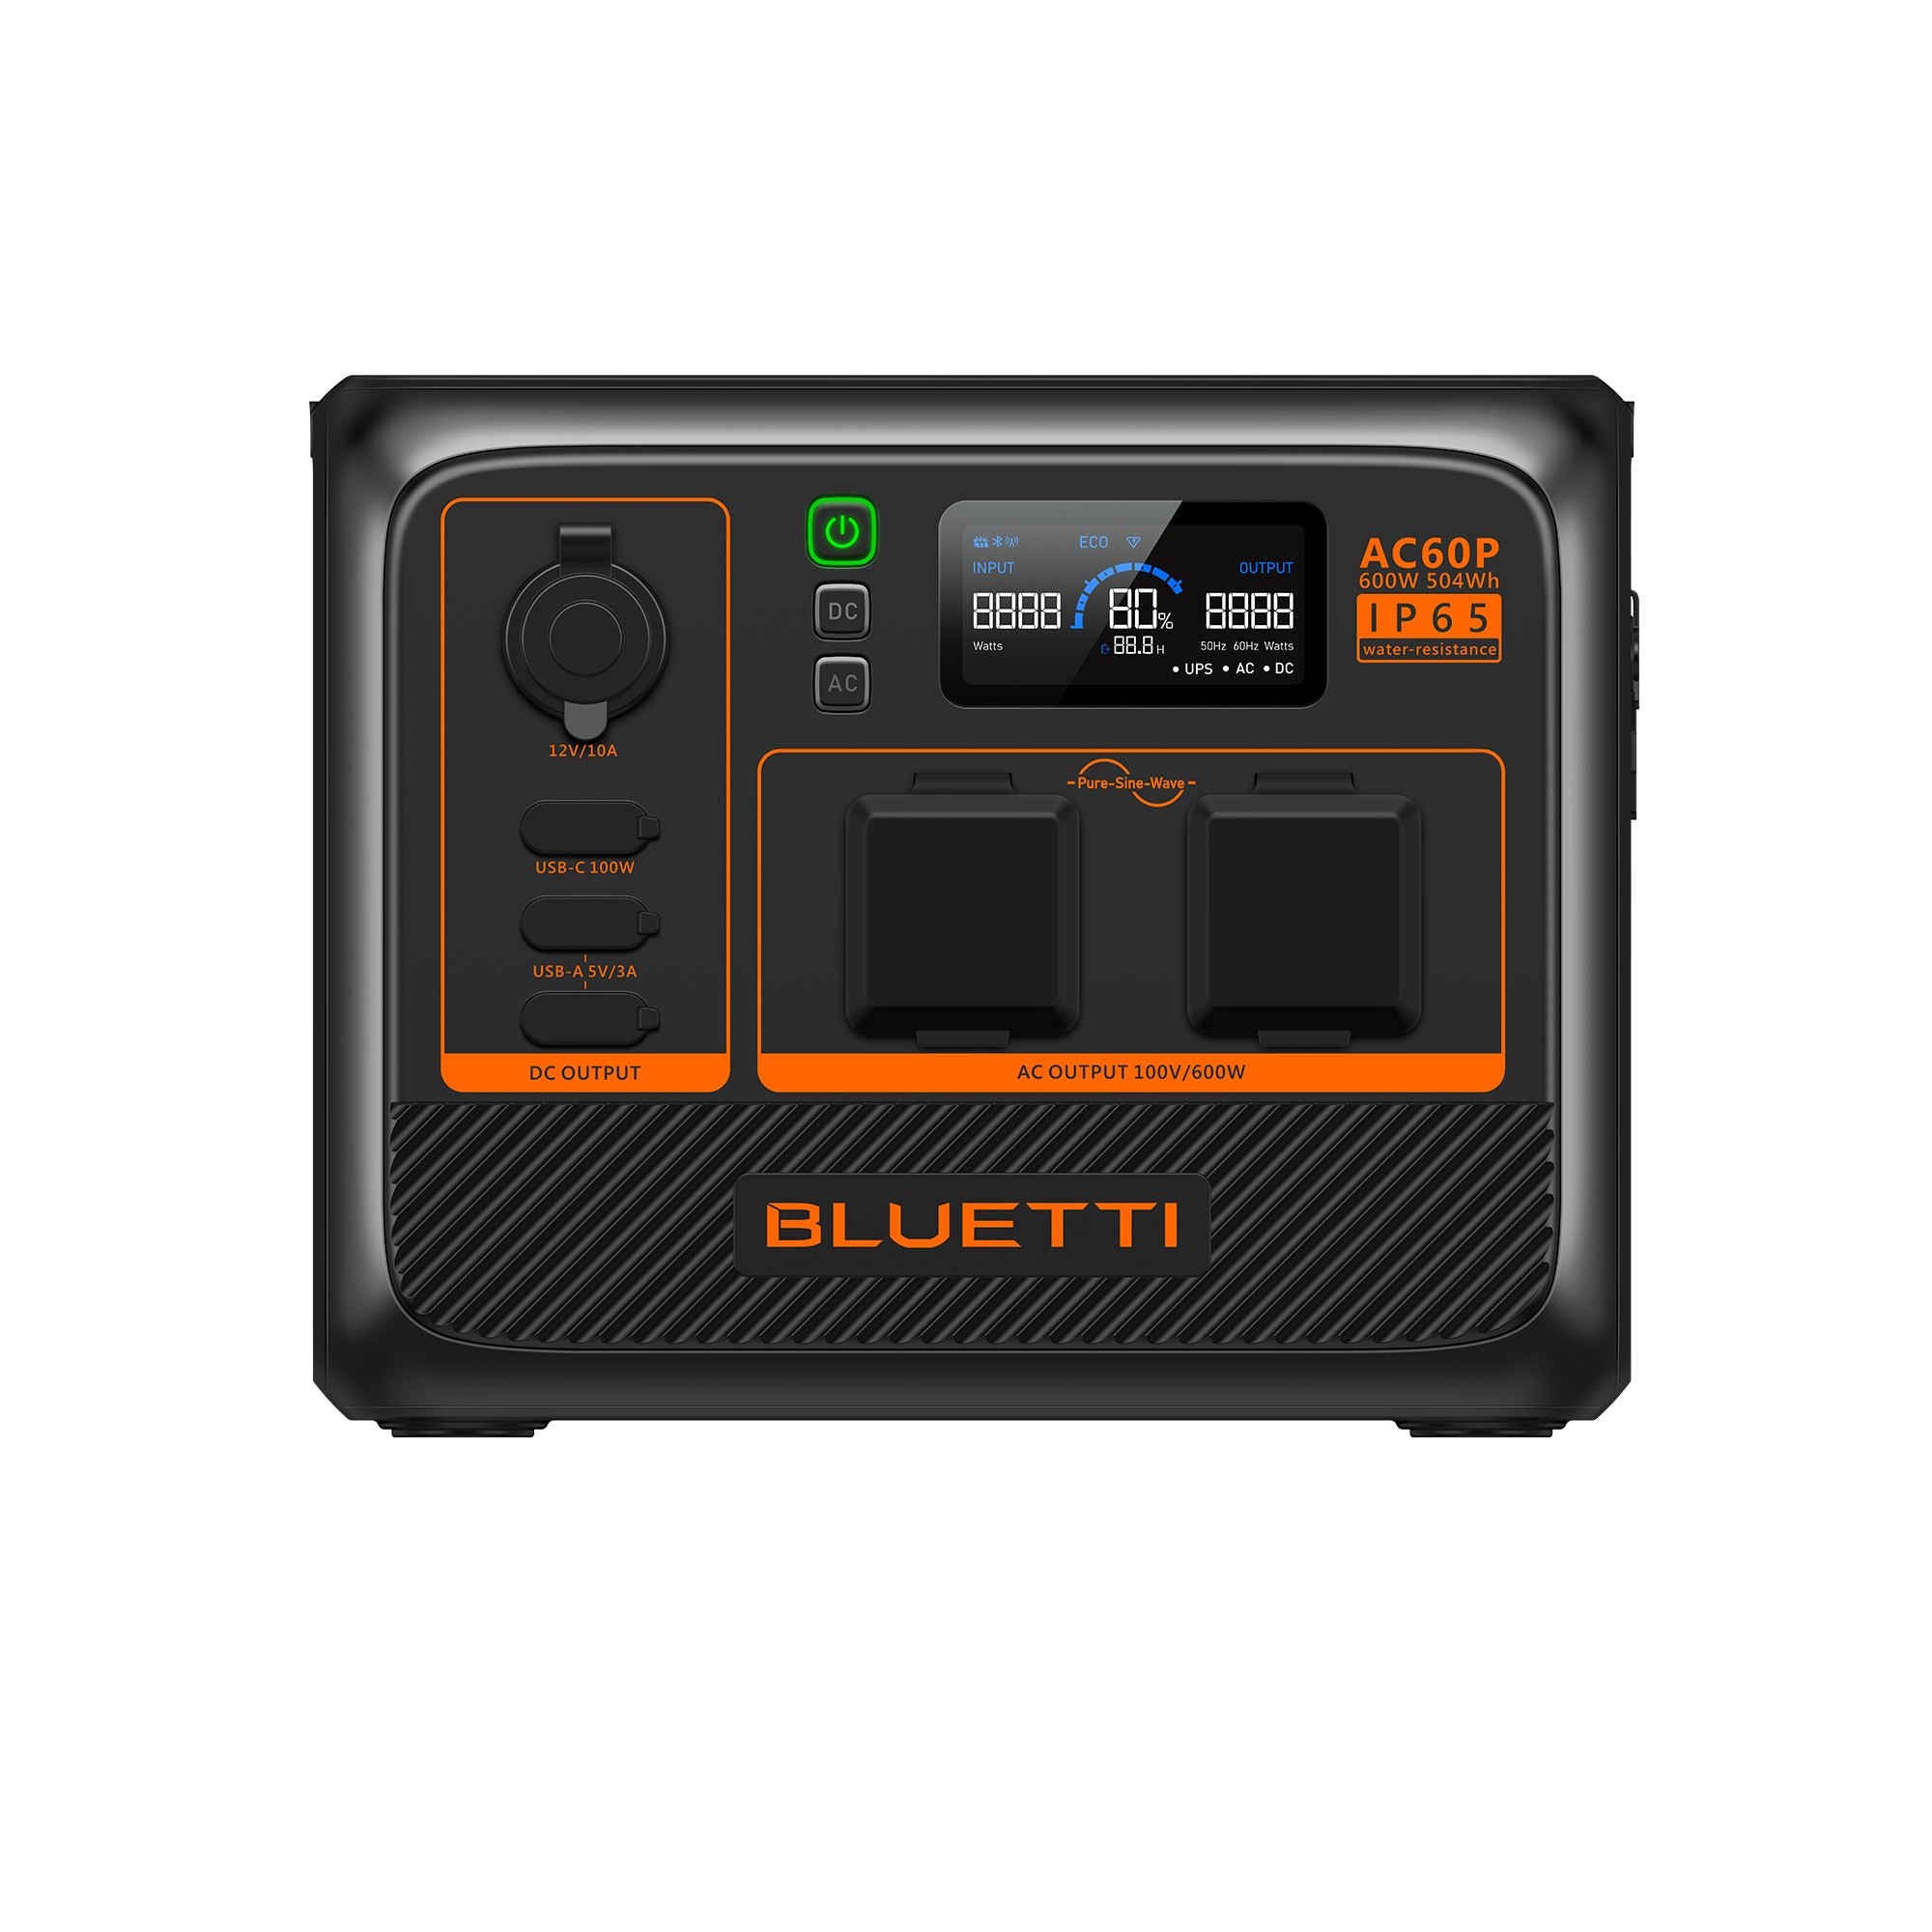 BLUETTIAC60P 小型ポータブル電源 | 防水・防塵モデル - BLUETTI